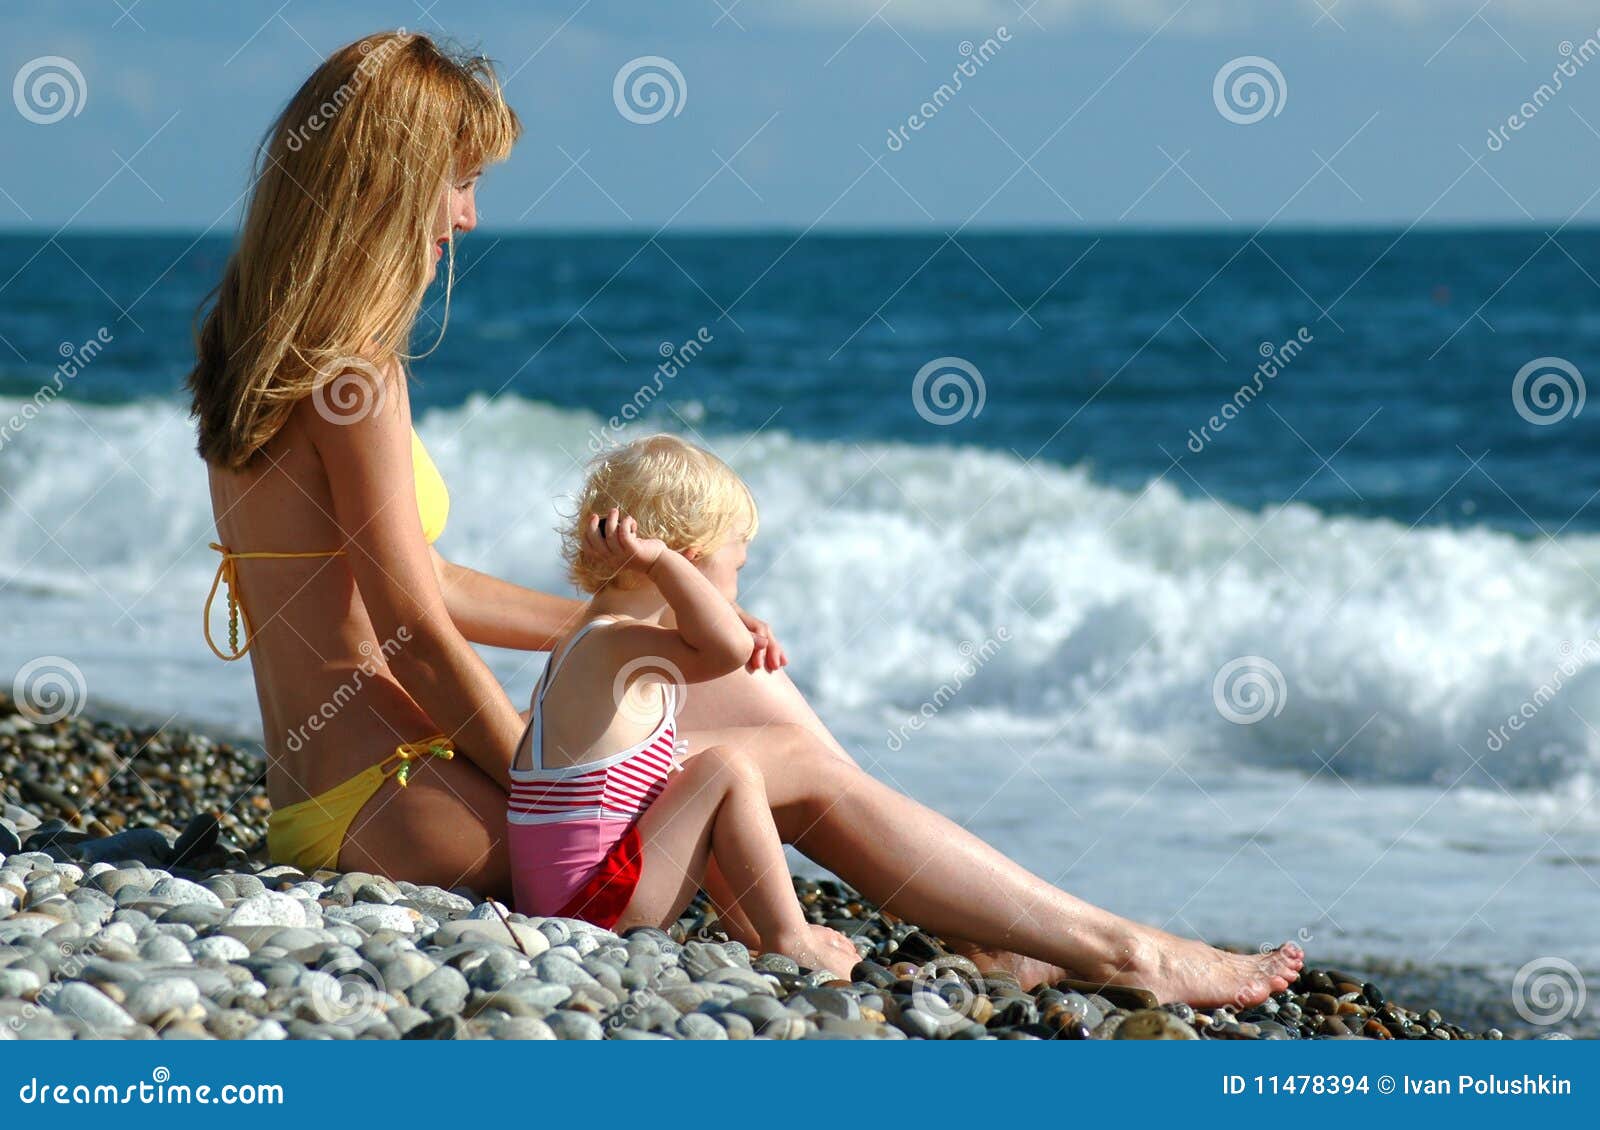 за голыми детьми на пляже фото 84